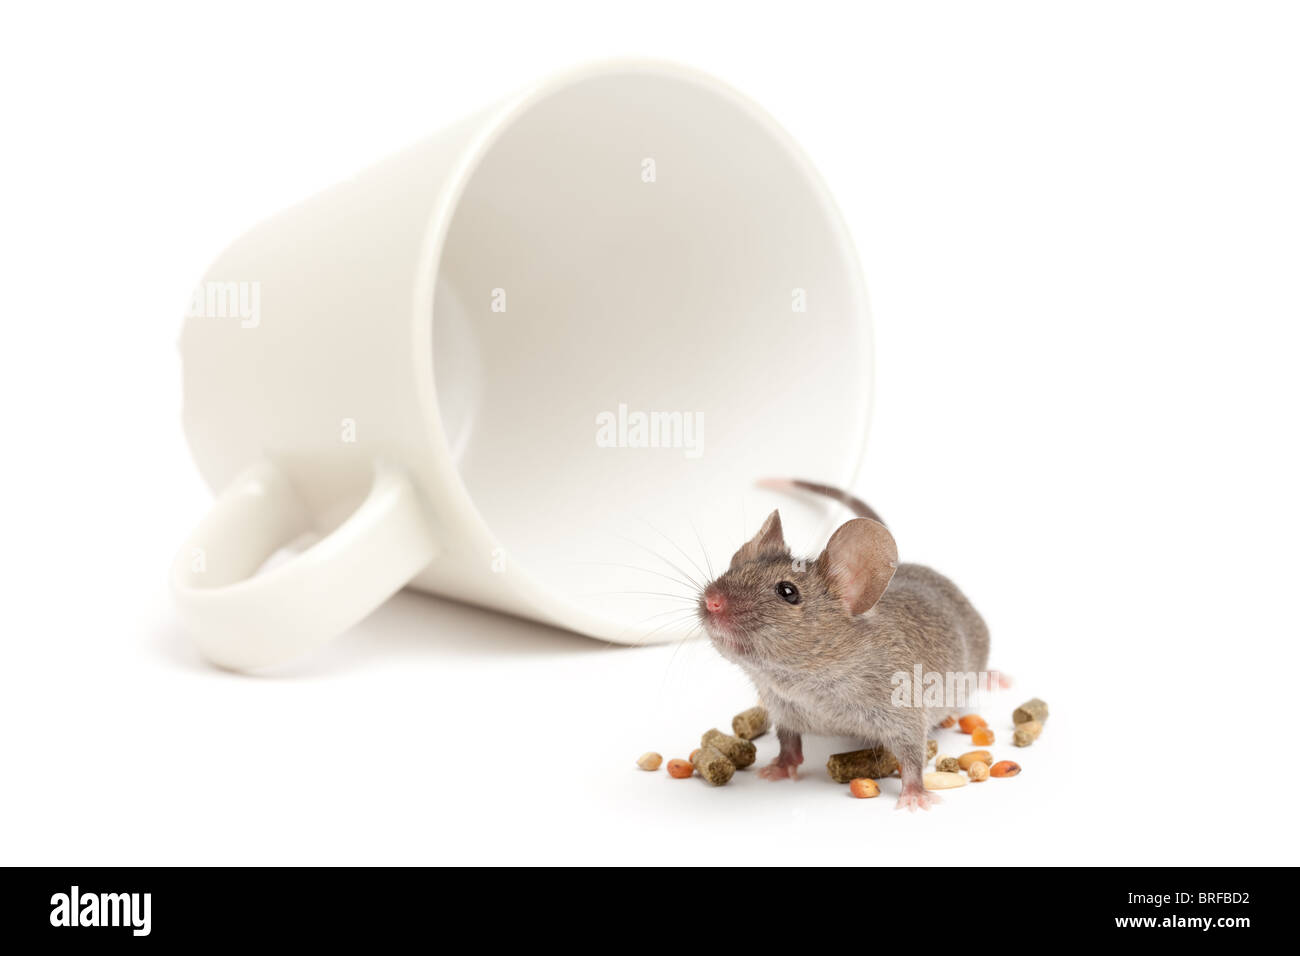 Avec la souris a renversé une tasse à café et de l'alimentation à distance - en - isolated on white Banque D'Images